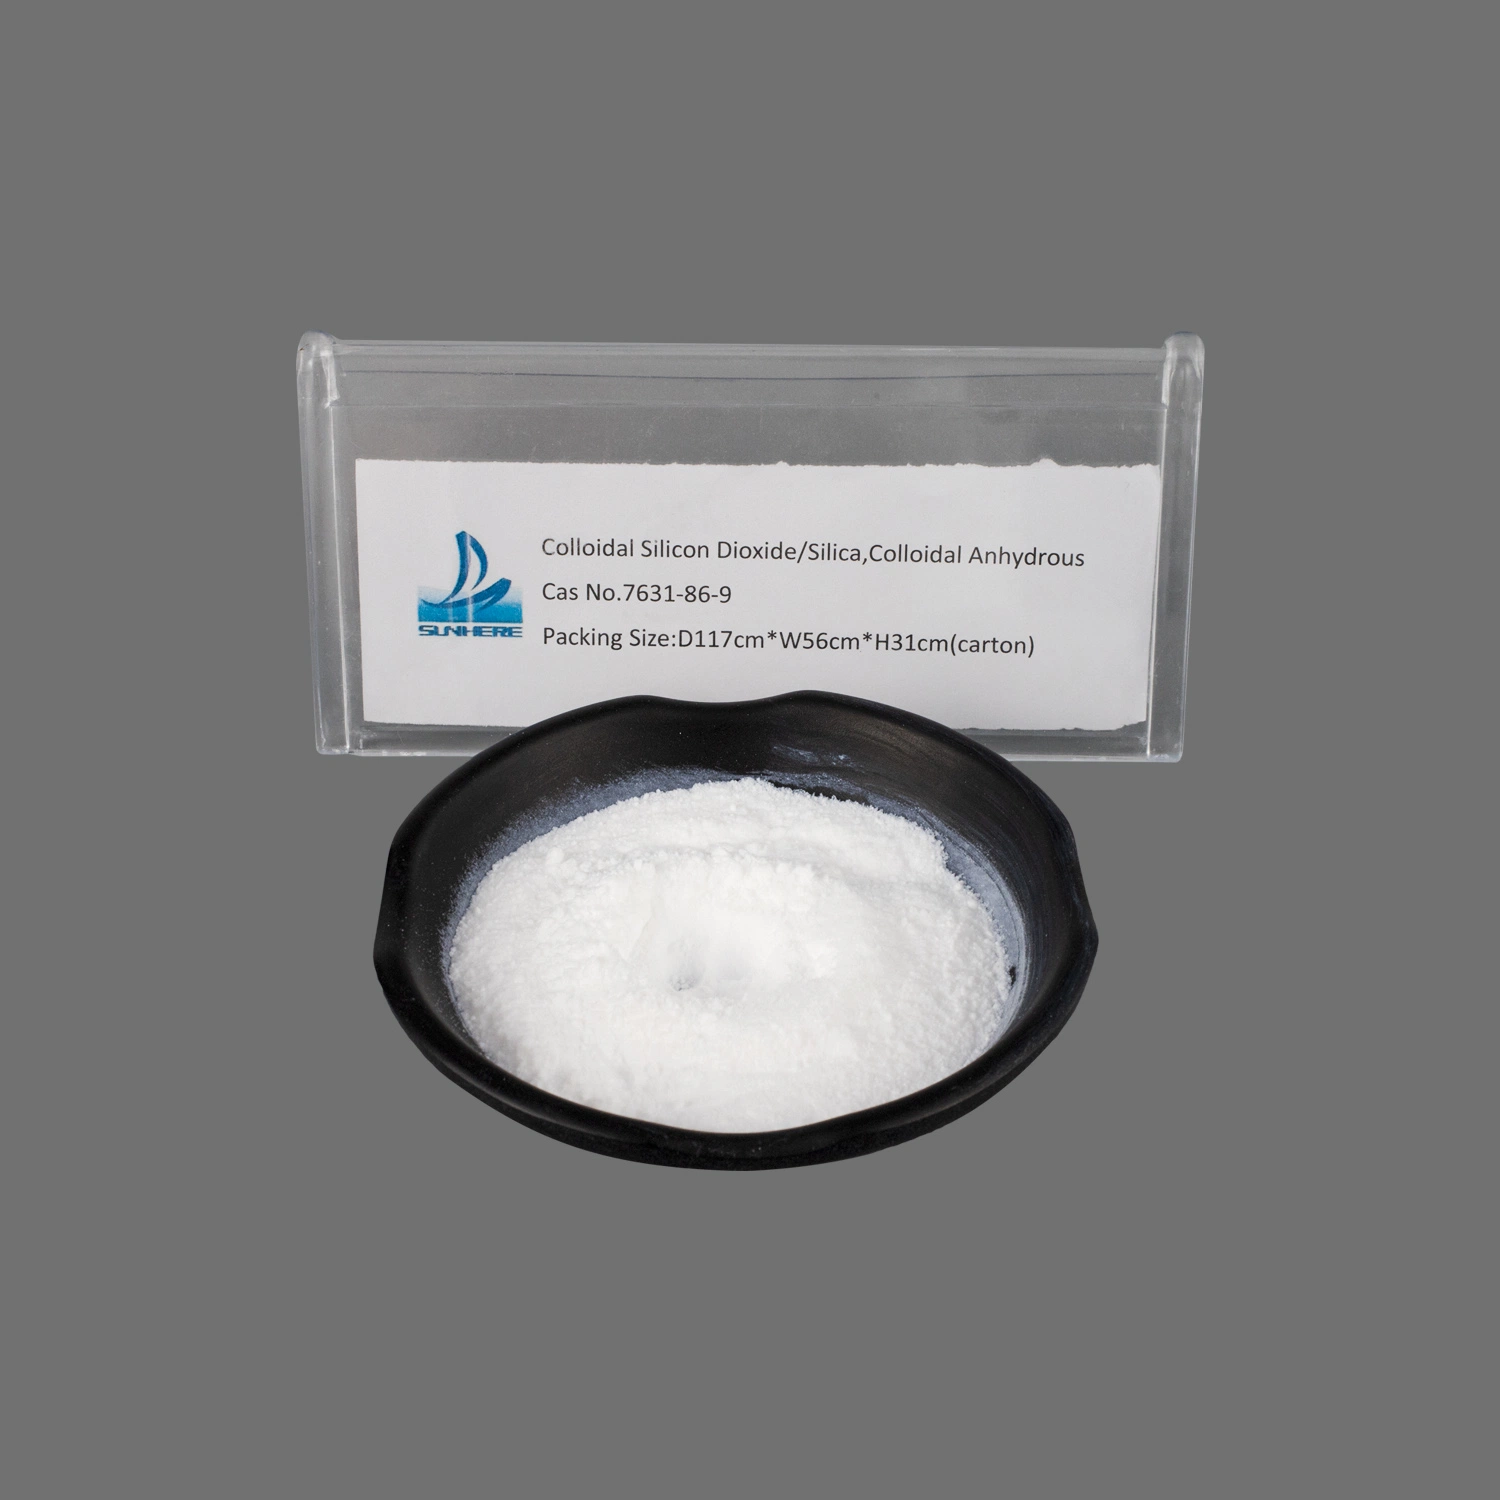 Pharma Grado Precio barato Pharmaceutical Grado Colloidal de dióxido de silicio Fabricantes CAS 7631-86-9